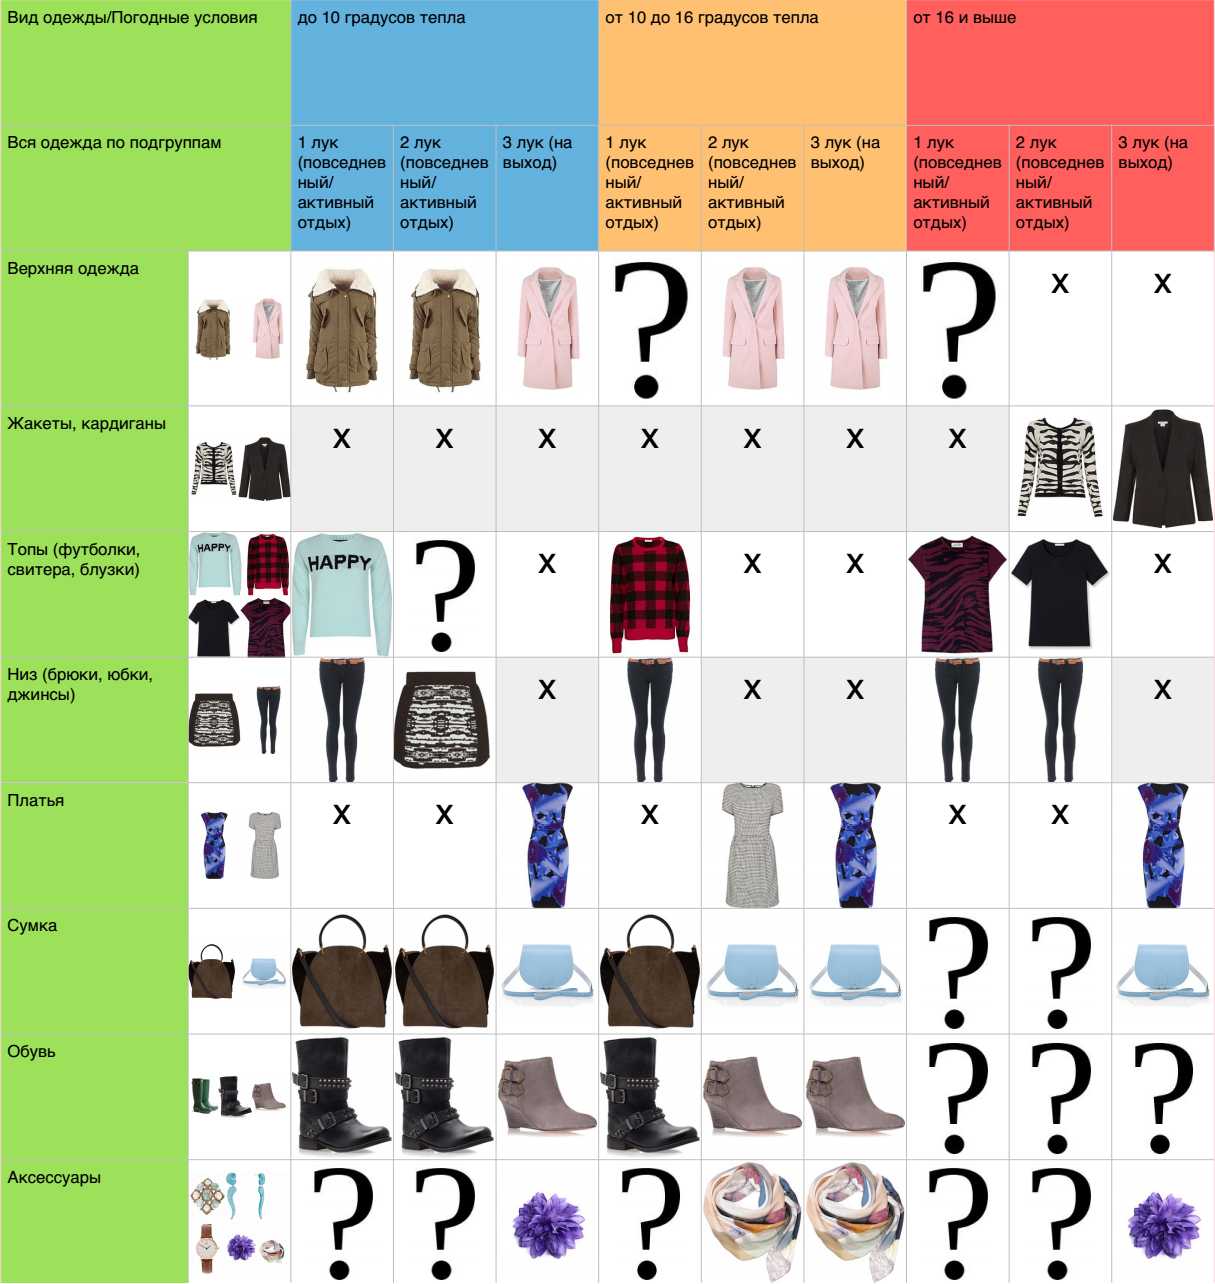 Многослойность в одежде, правила составления комплектов